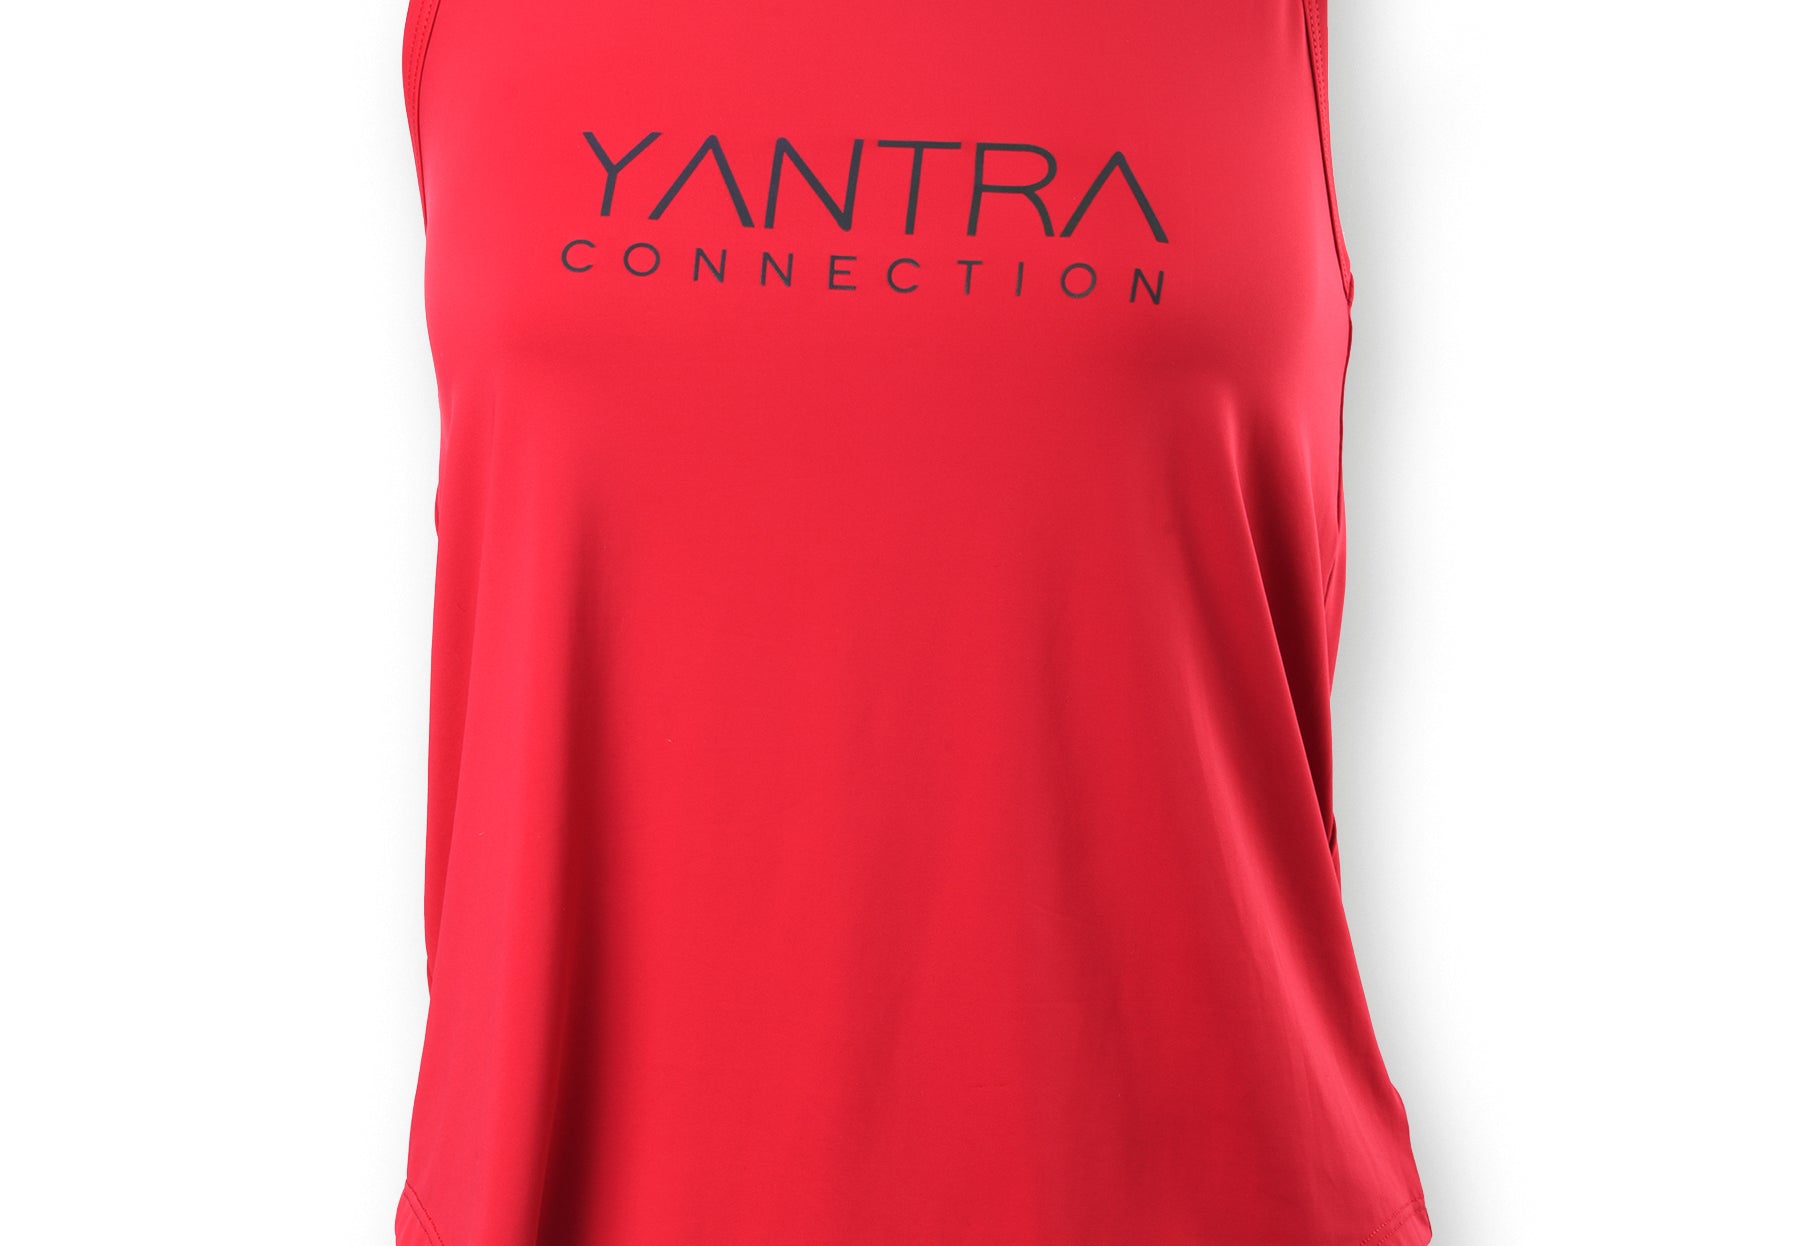 ELITE T-shirt - YantraConnection